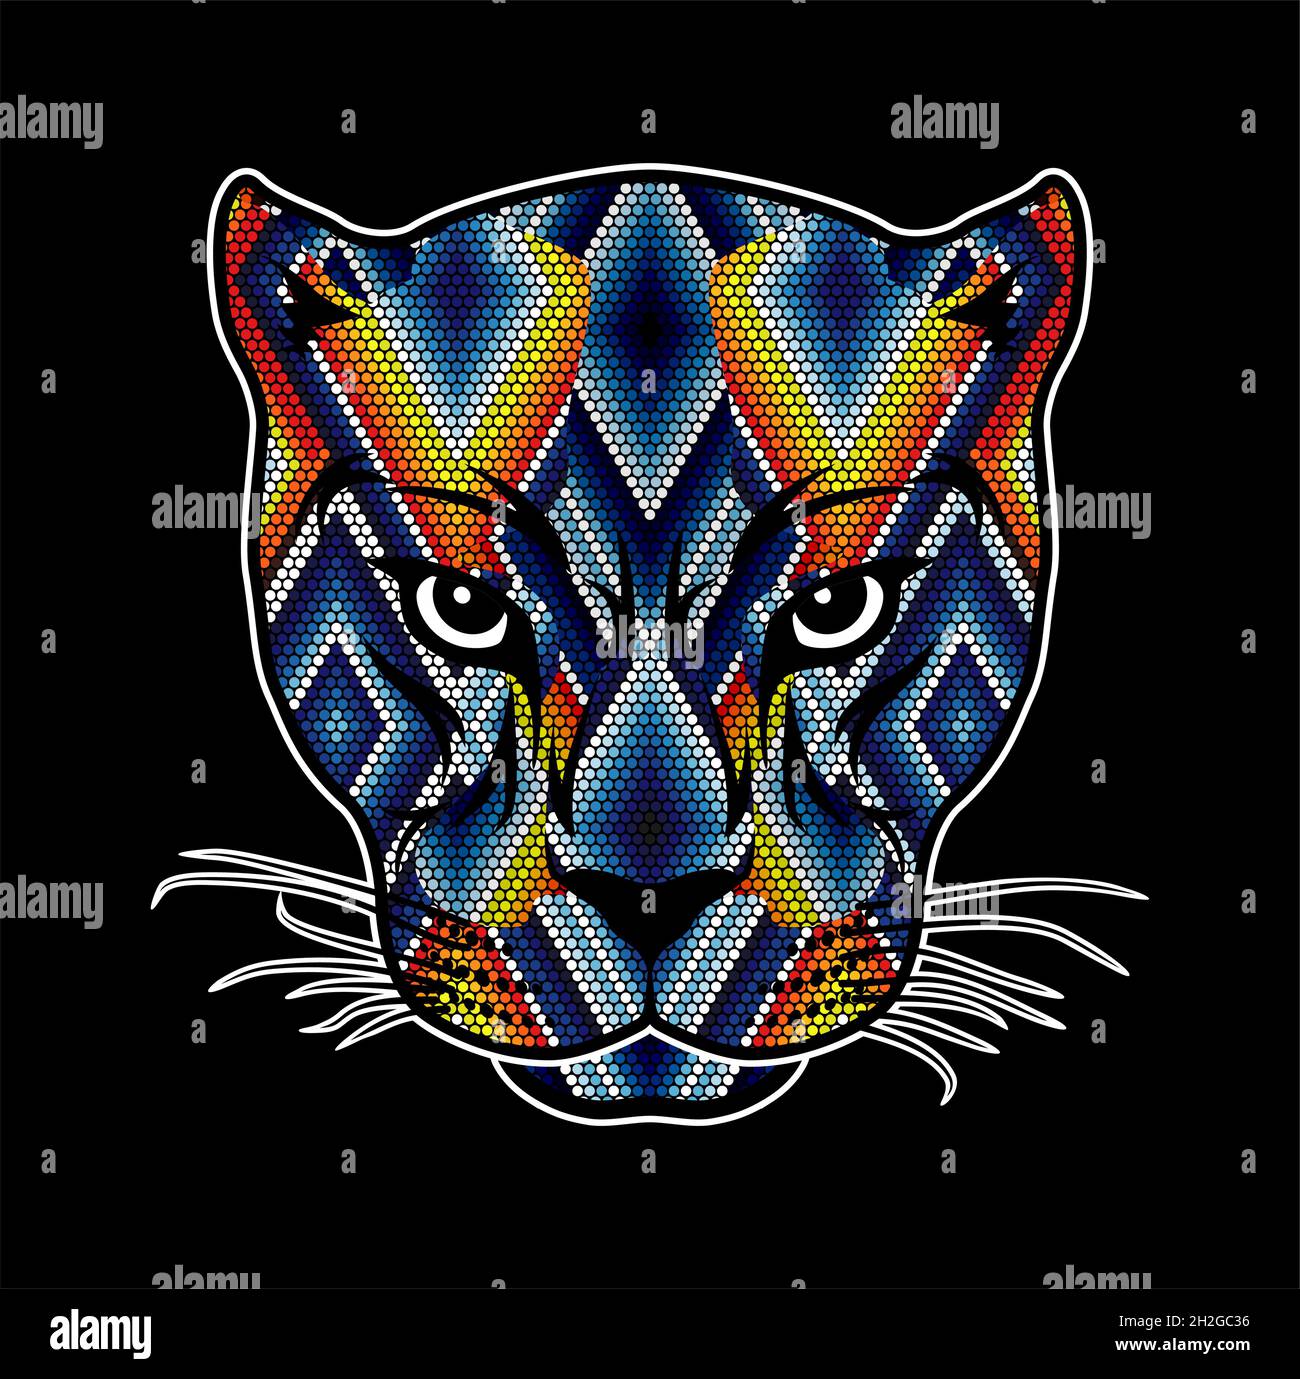 Ilustración vectorial de la colorida cabeza de gato salvaje con abalorios  que podría ser un jaguar, puma, leopardo, etc. inspirado en el arte huichol  mexicano aislado en el bla Imagen Vector de